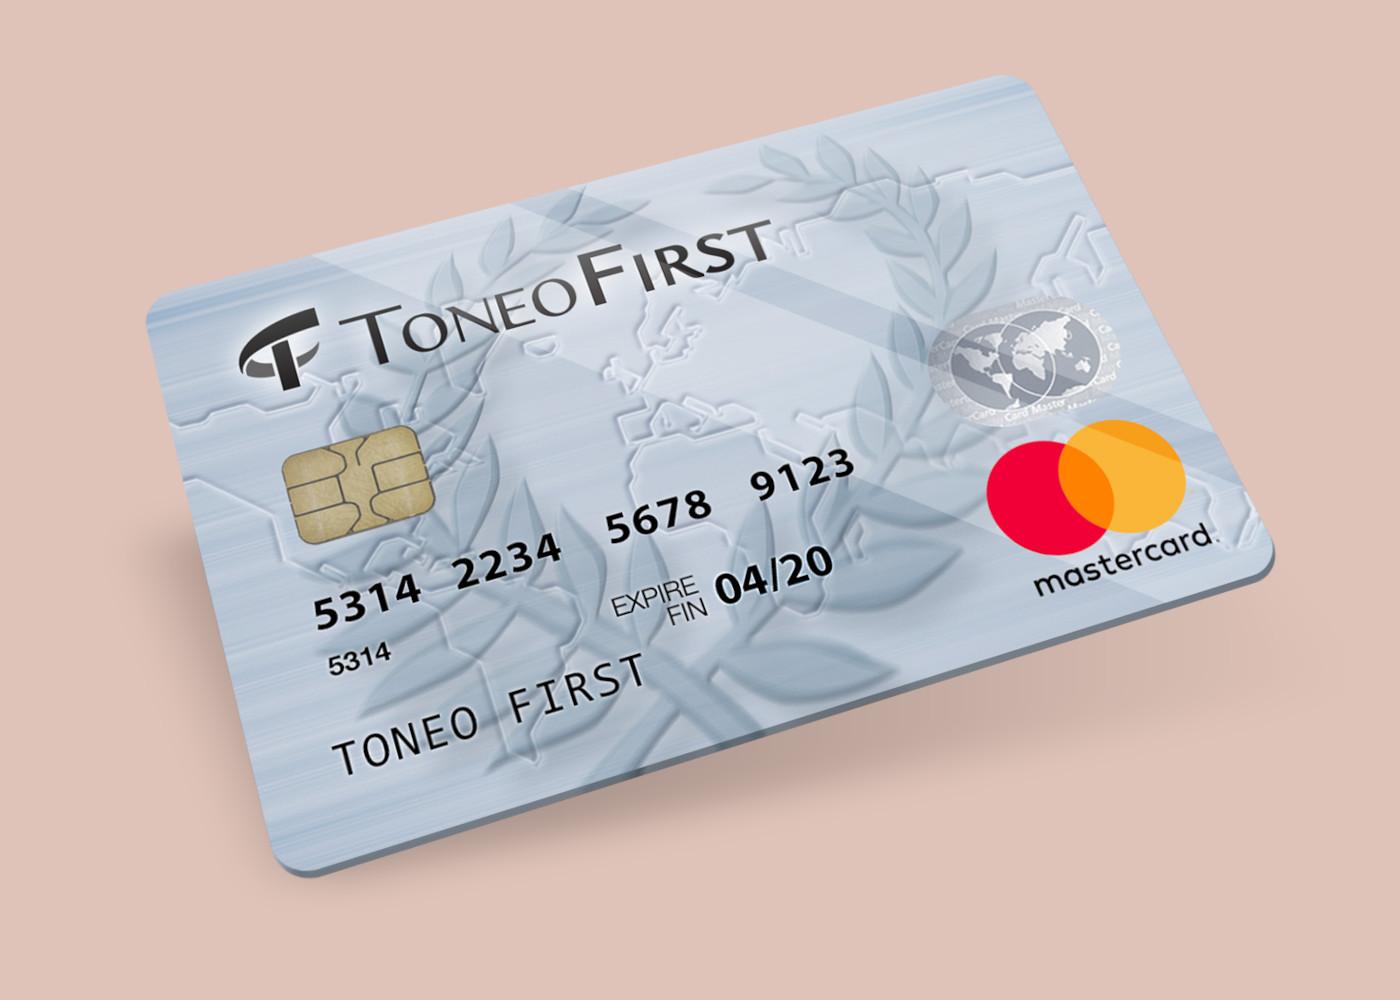 Toneo First Mastercard €15 Gift Card EU 19.63 usd